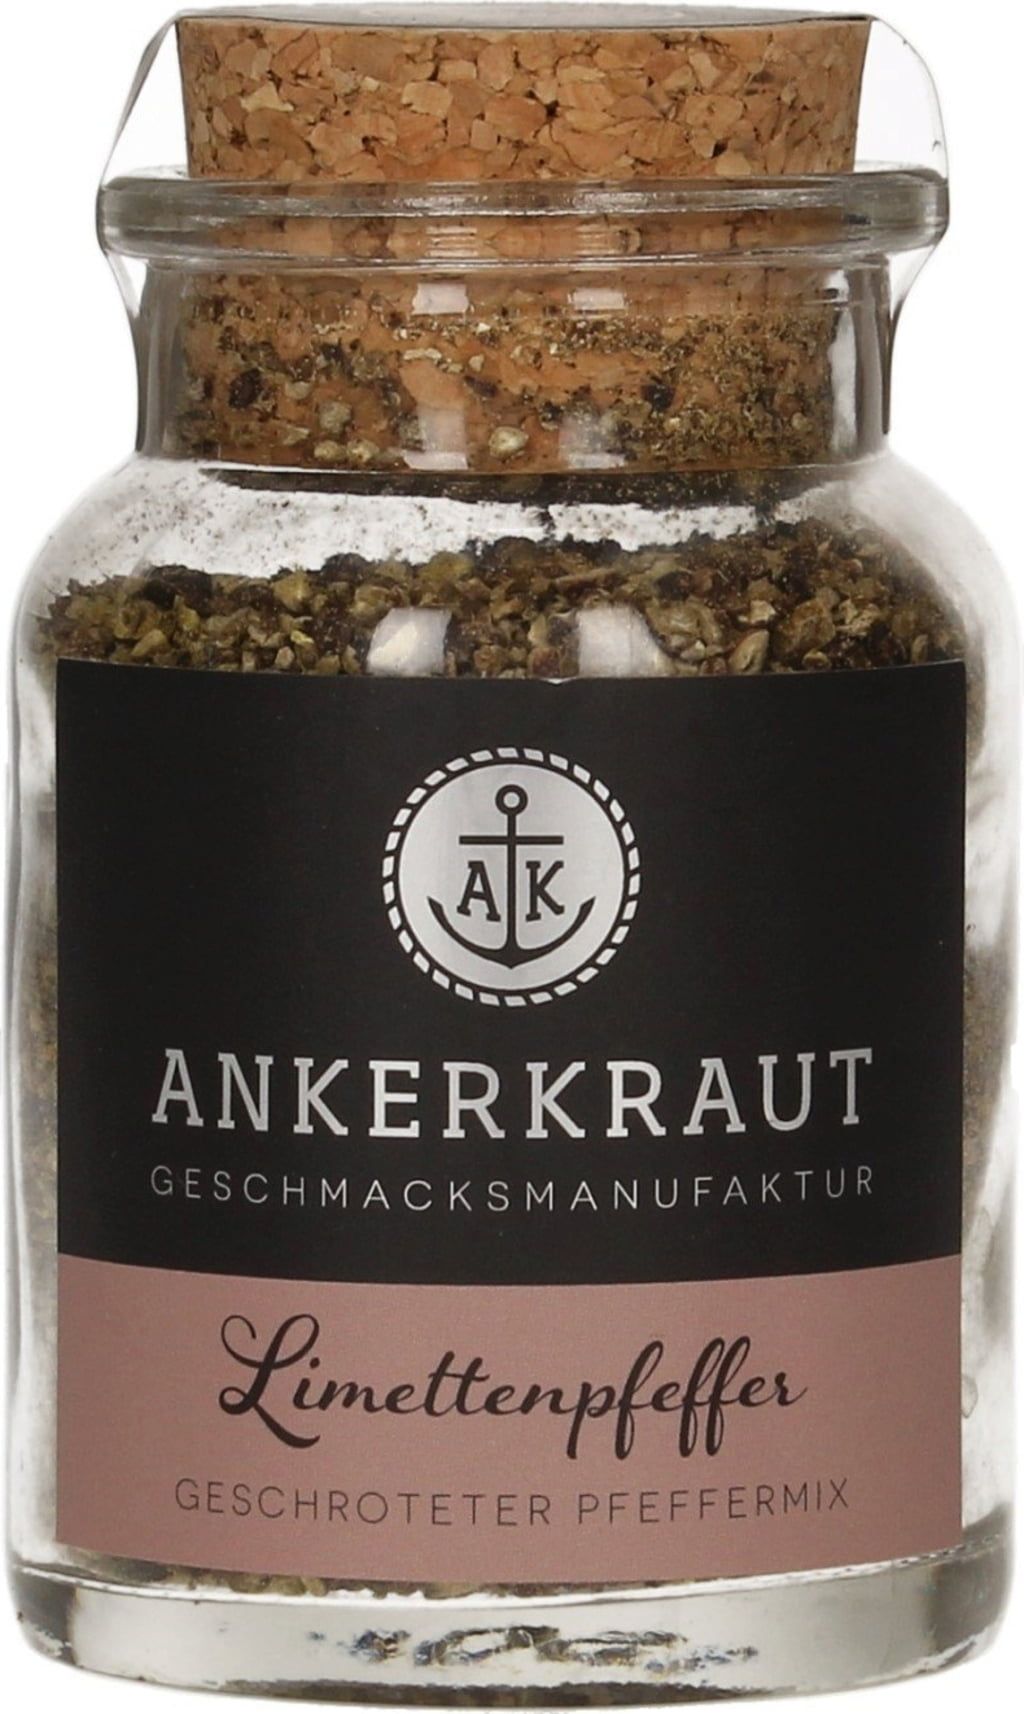 Ankerkraut Limetin poper, 75 g - Piccantino Slovenija